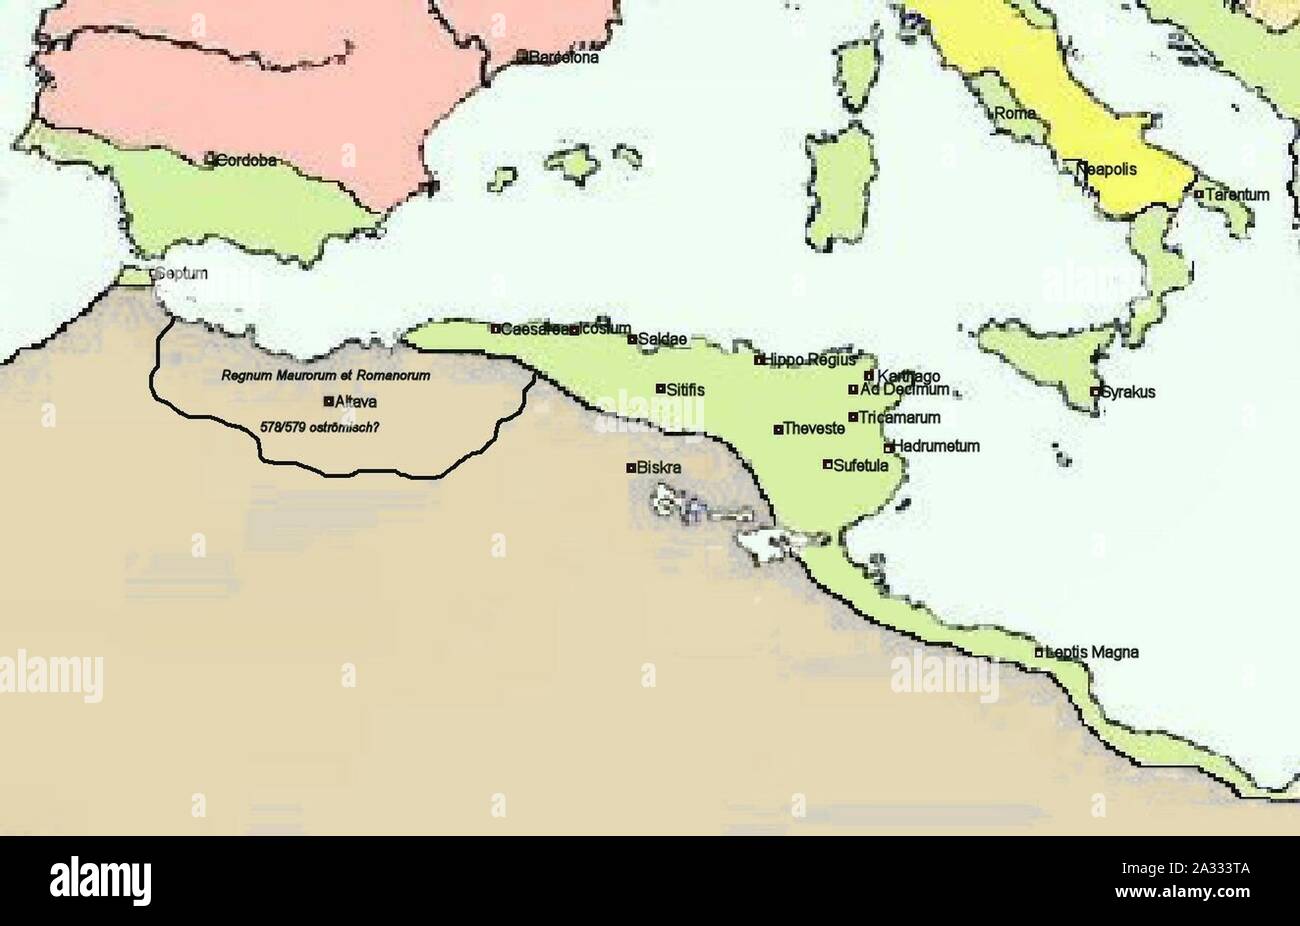 Король страны римской из северной земли подумал. Африканский Экзархат. Карфагенский Экзархат карта. Болгарский Экзархат карта. Карфаген государство на карте.